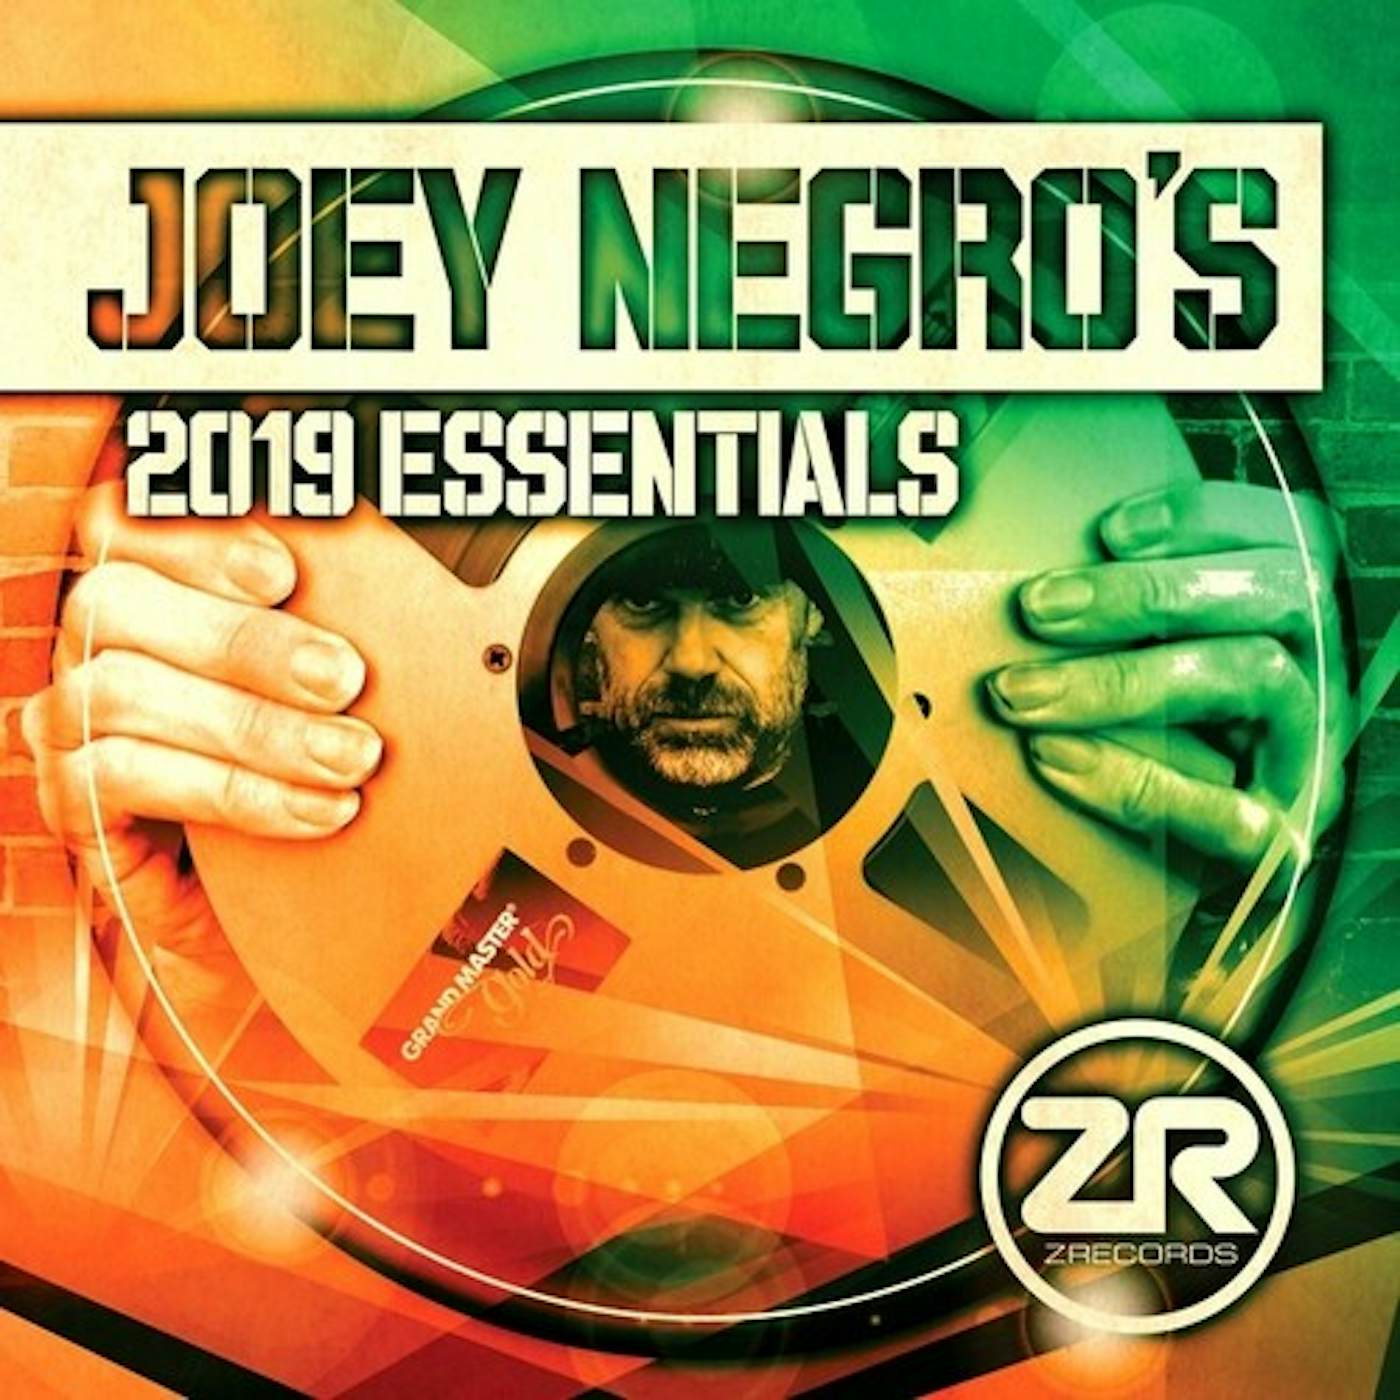 Joey Negro 2019 ESSENTIALS CD